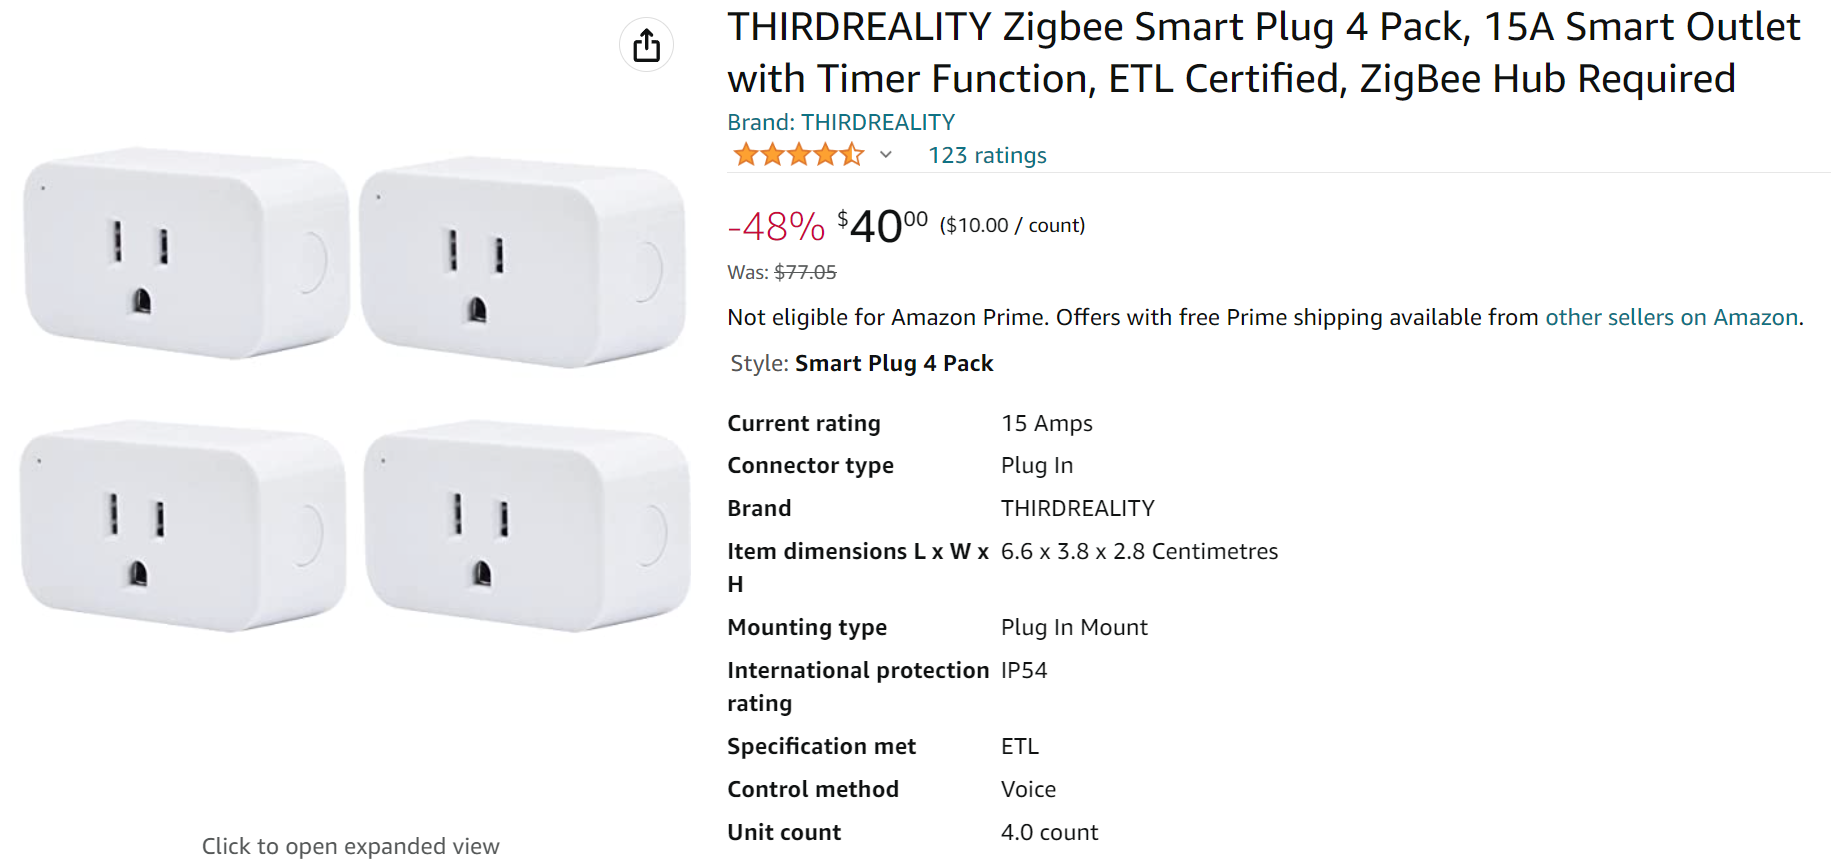 .ca 4 pack for $40.00 THIRDREALITY Zigbee Smart Plug $10/ea